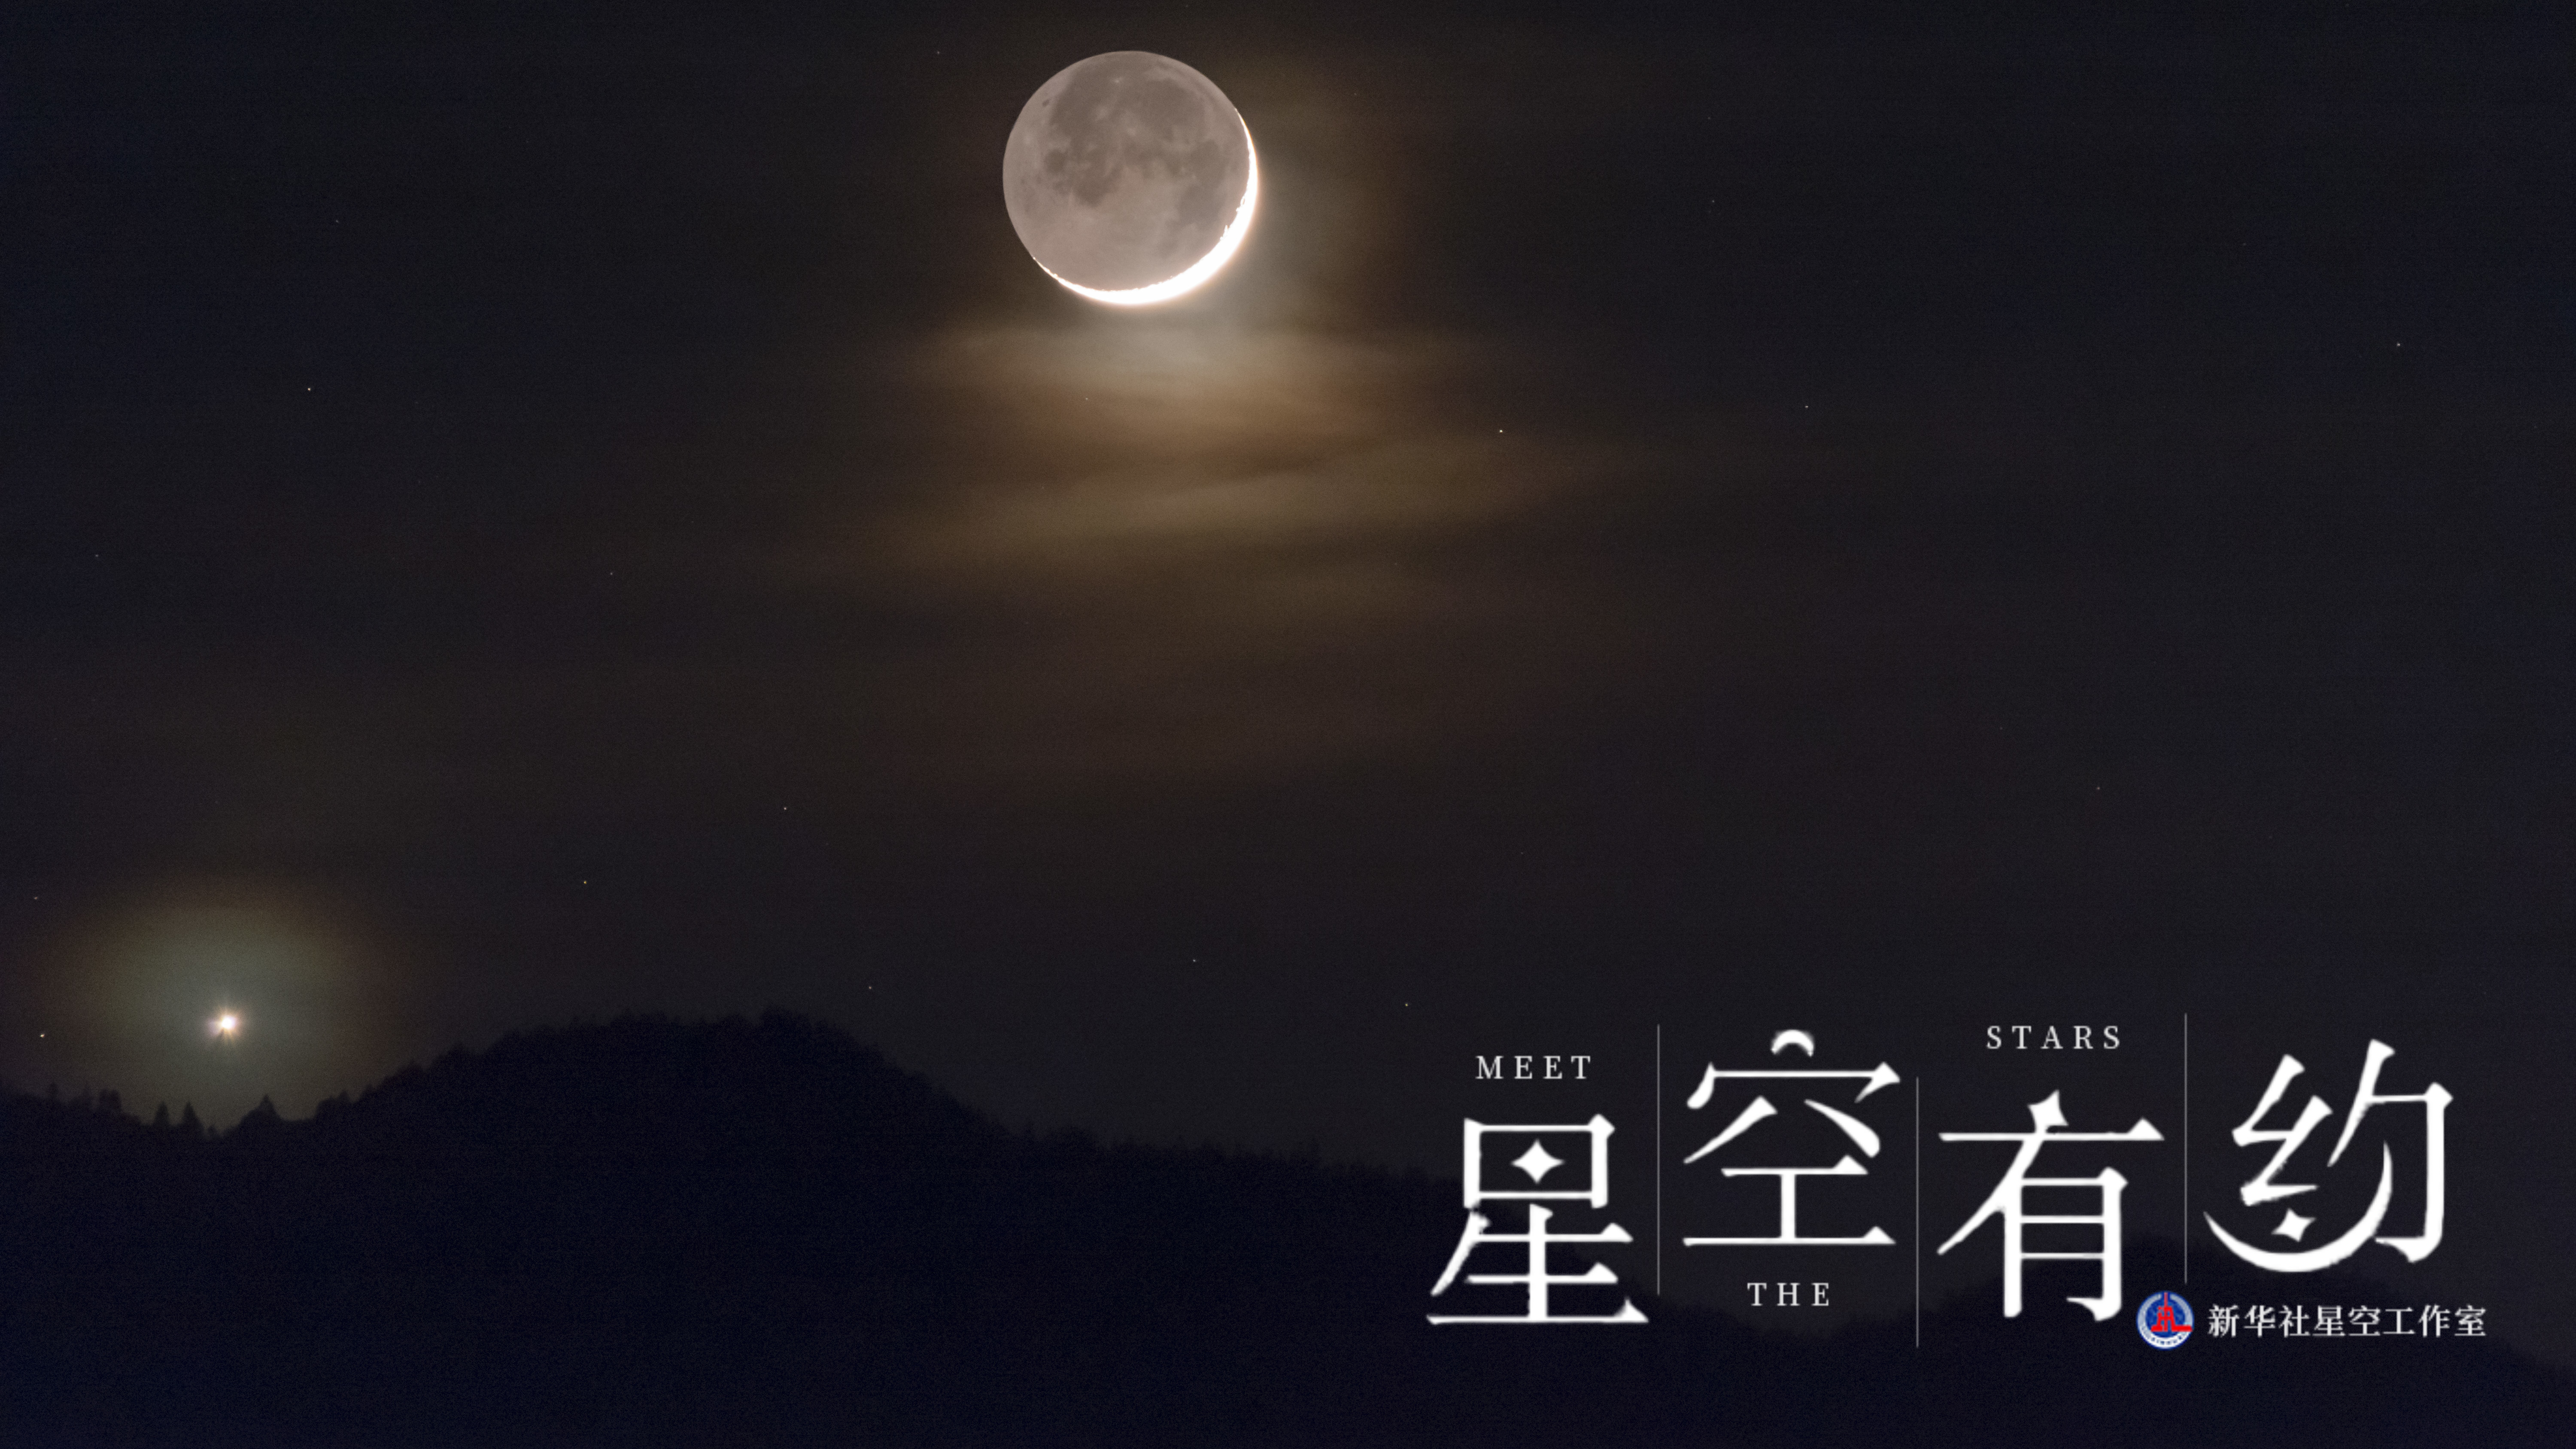 10日天宇上演浪漫一幕:金星伴眉月